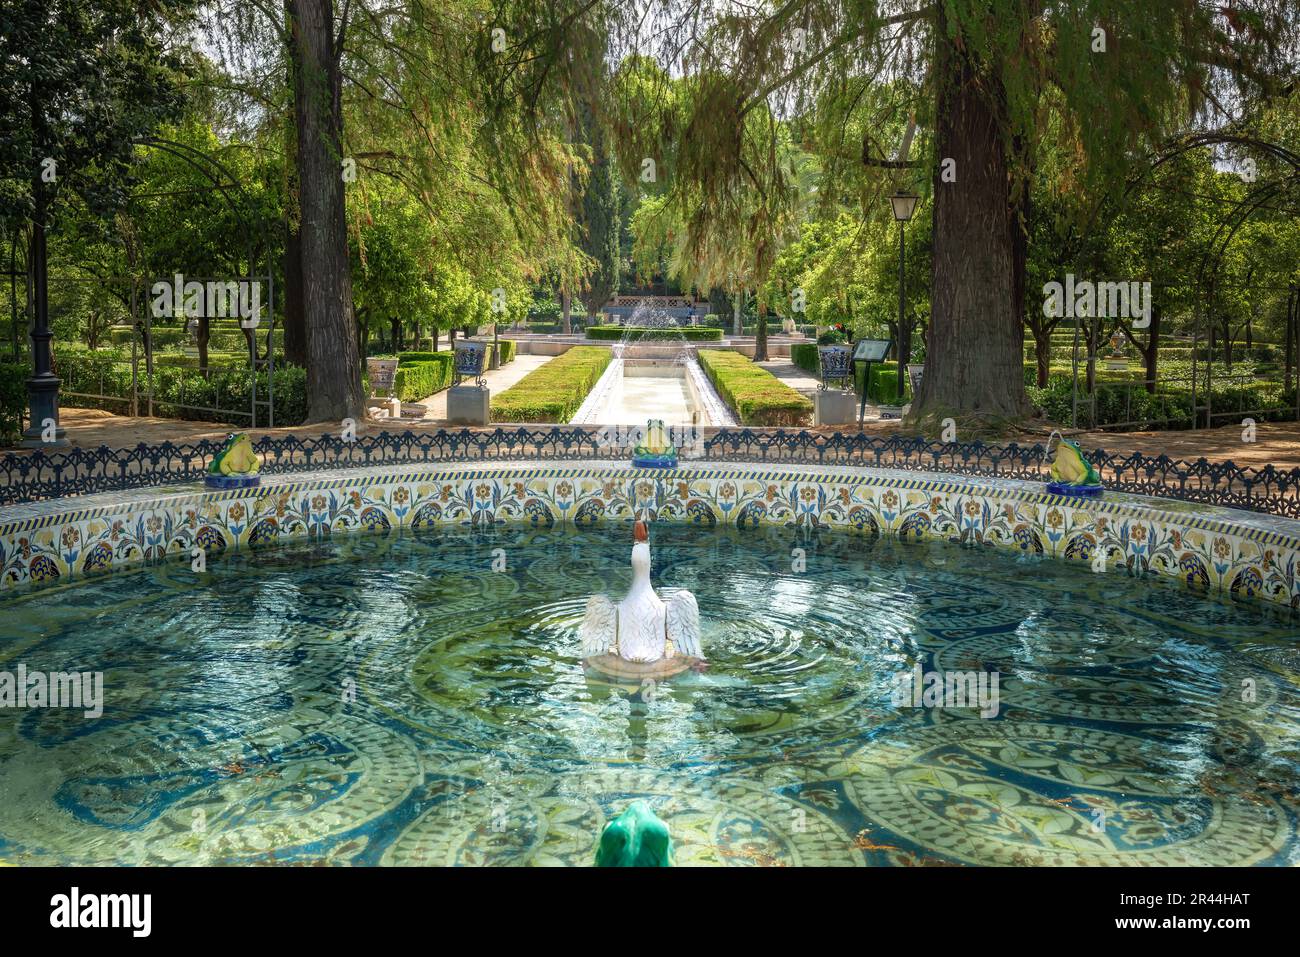 Fuente de las Ranas (Froschbrunnen) im Maria Luisa Park - Sevilla, Andalusien, Spanien Stockfoto